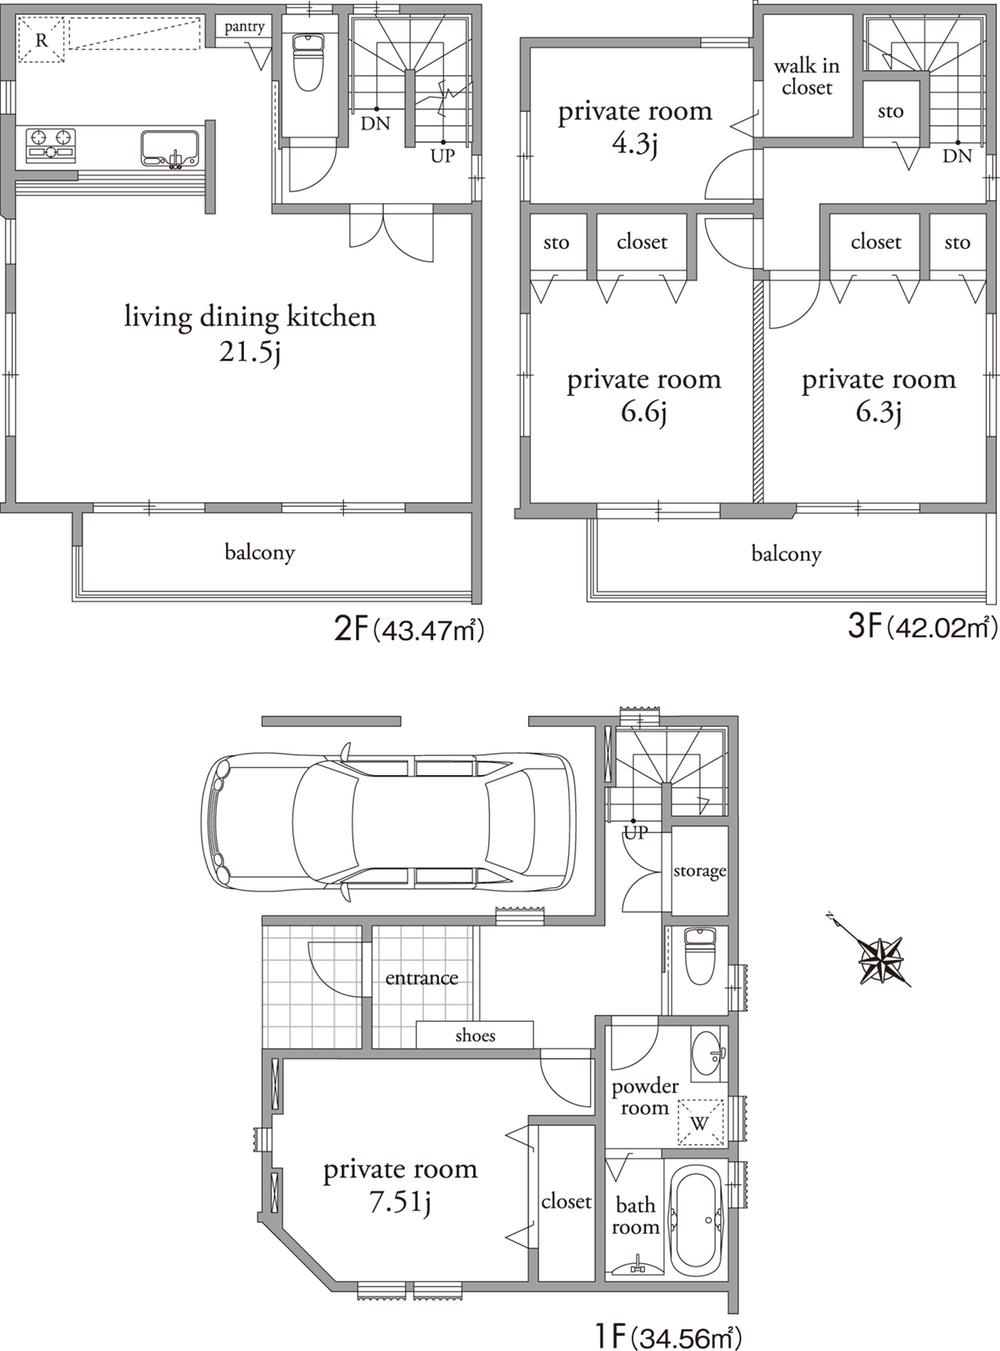 Floor plan. (A Building), Price 62,800,000 yen, 4LDK, Land area 70.01 sq m , Building area 131.86 sq m